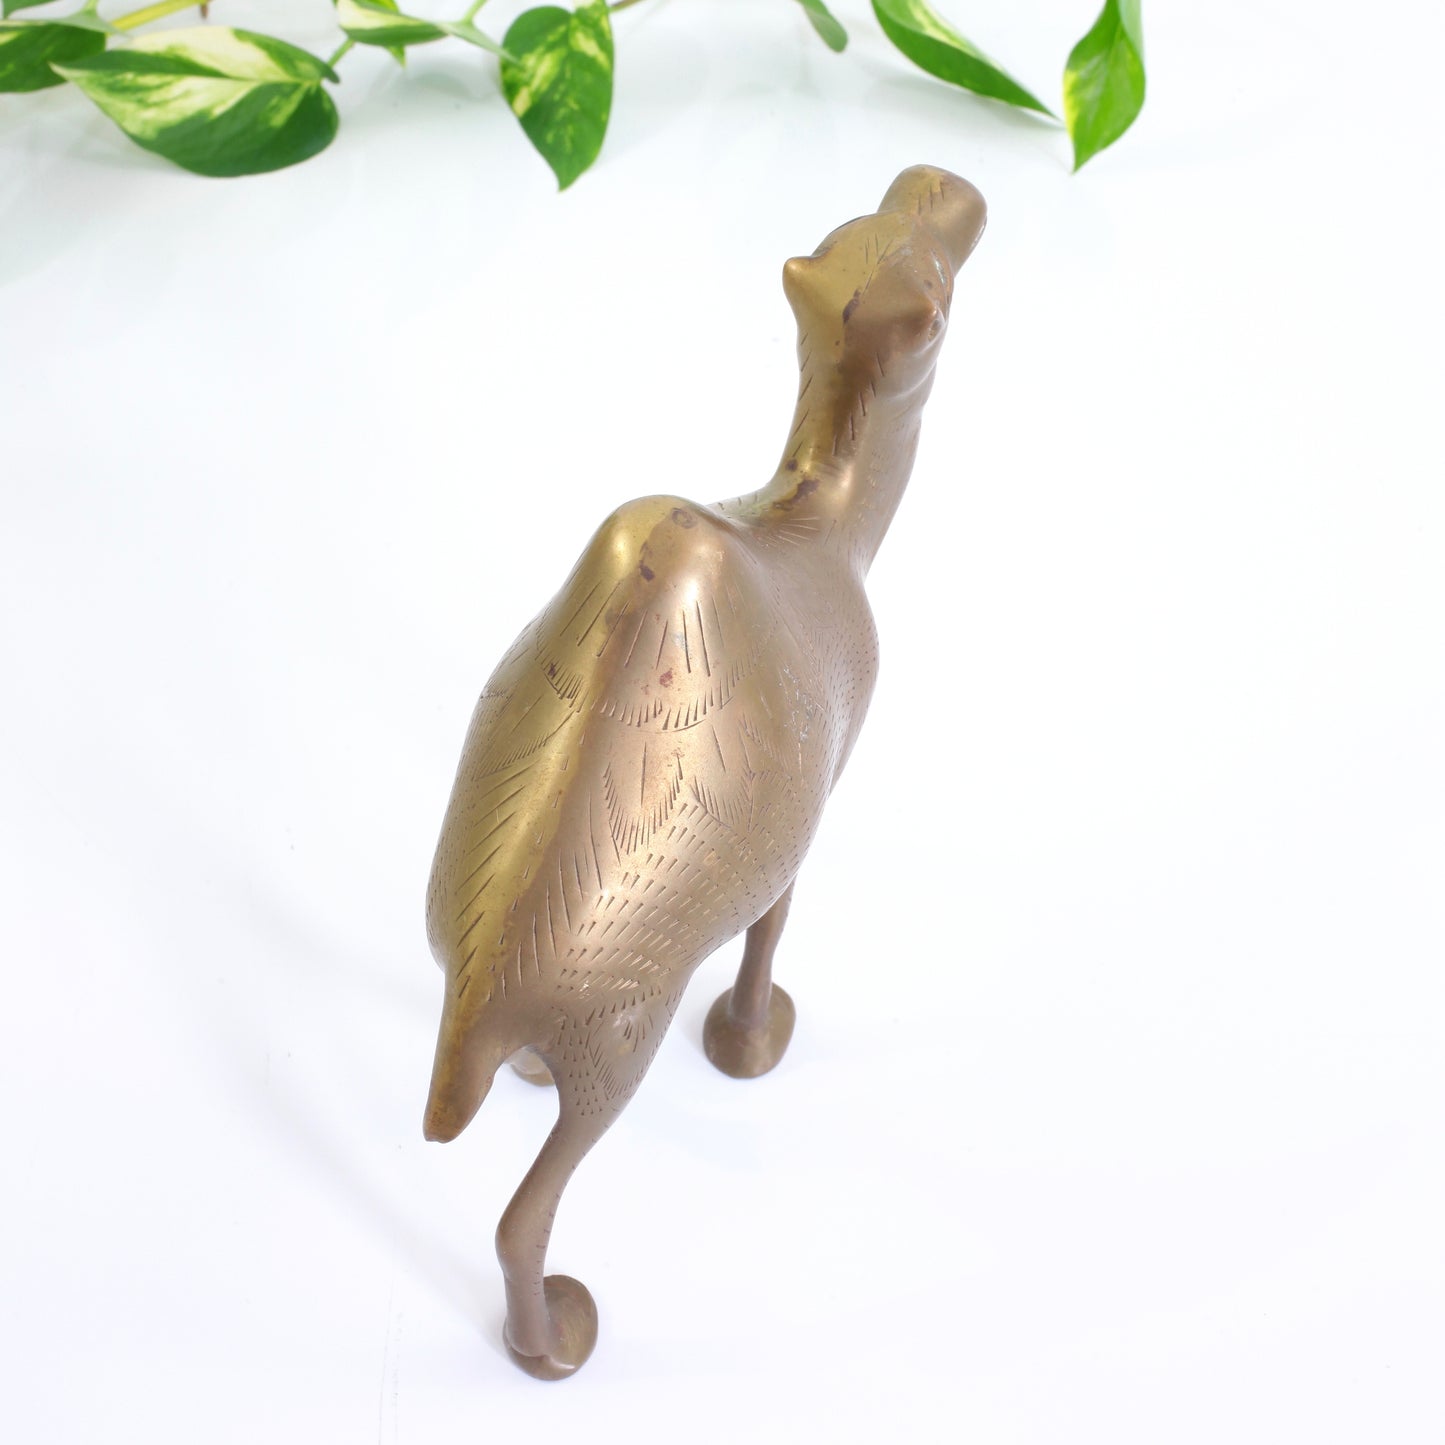 SOLD - Vintage Etched Brass Camel Figurine